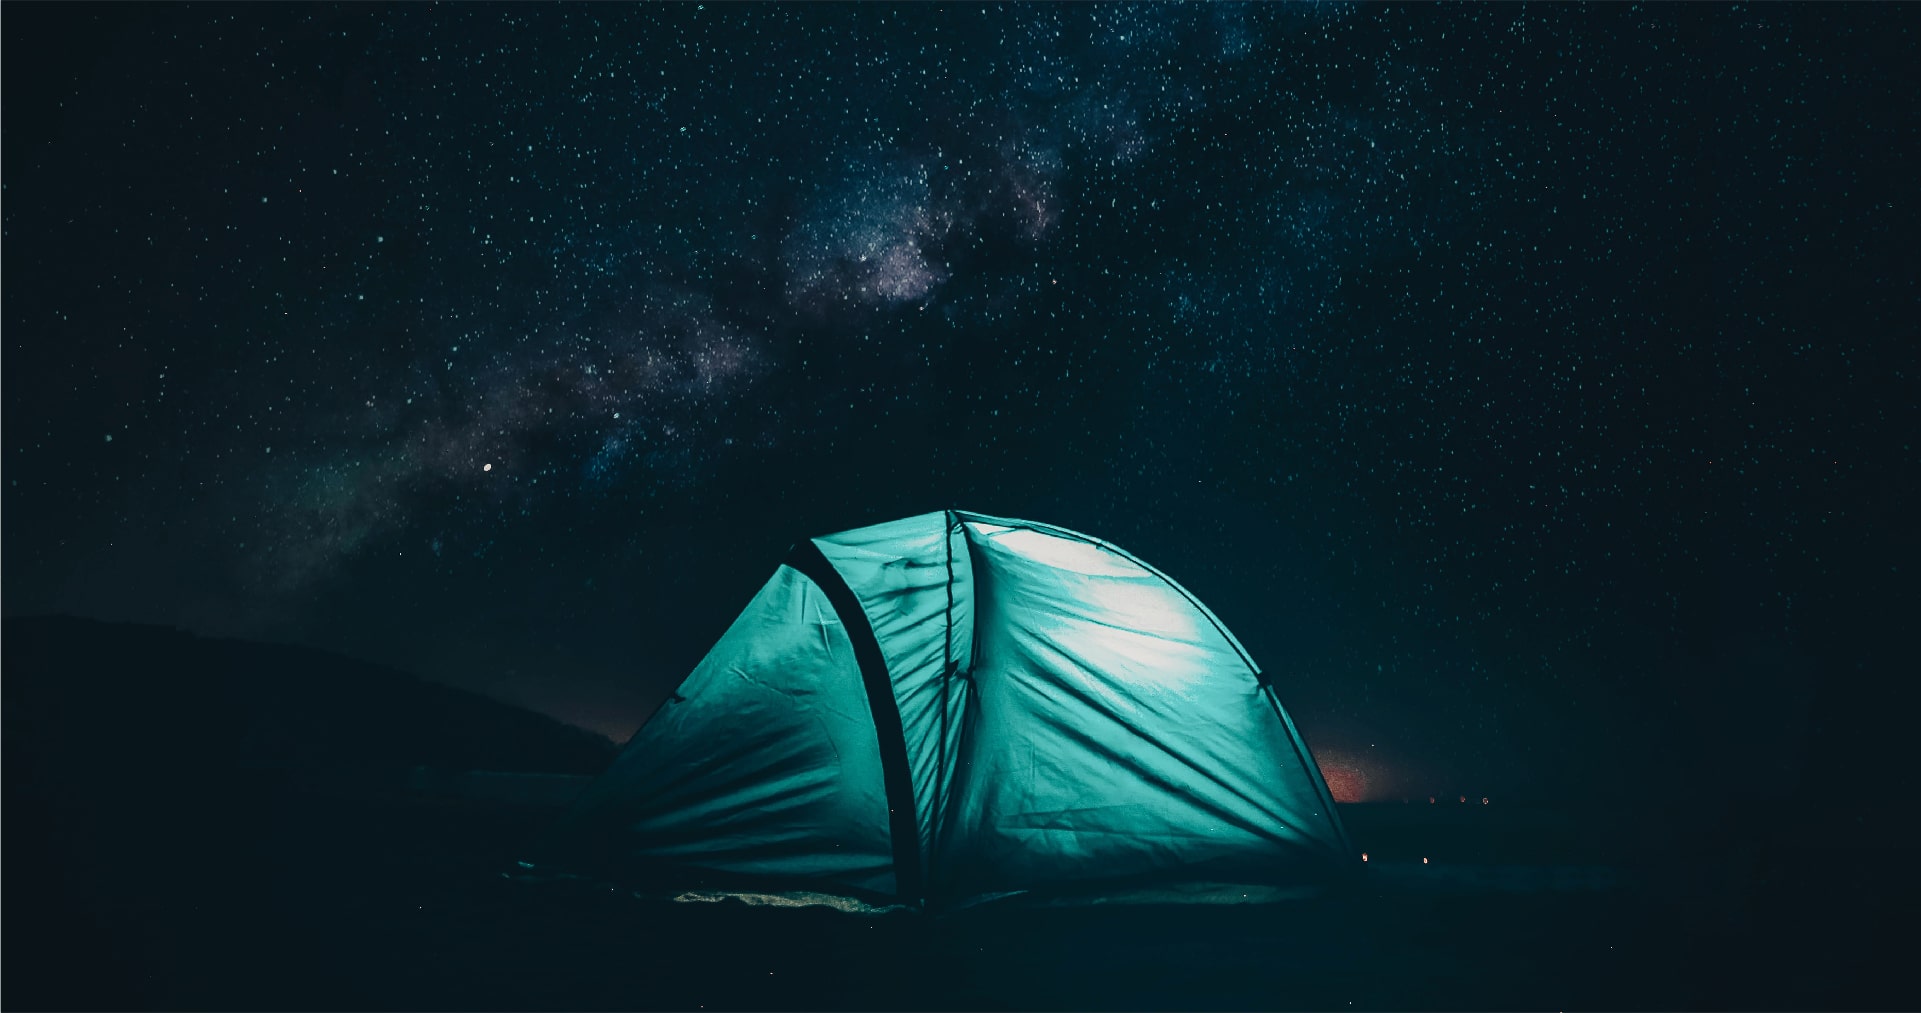 Διακοπές σε Camping: Τα Smart Gadgets που θα χρειαστείς